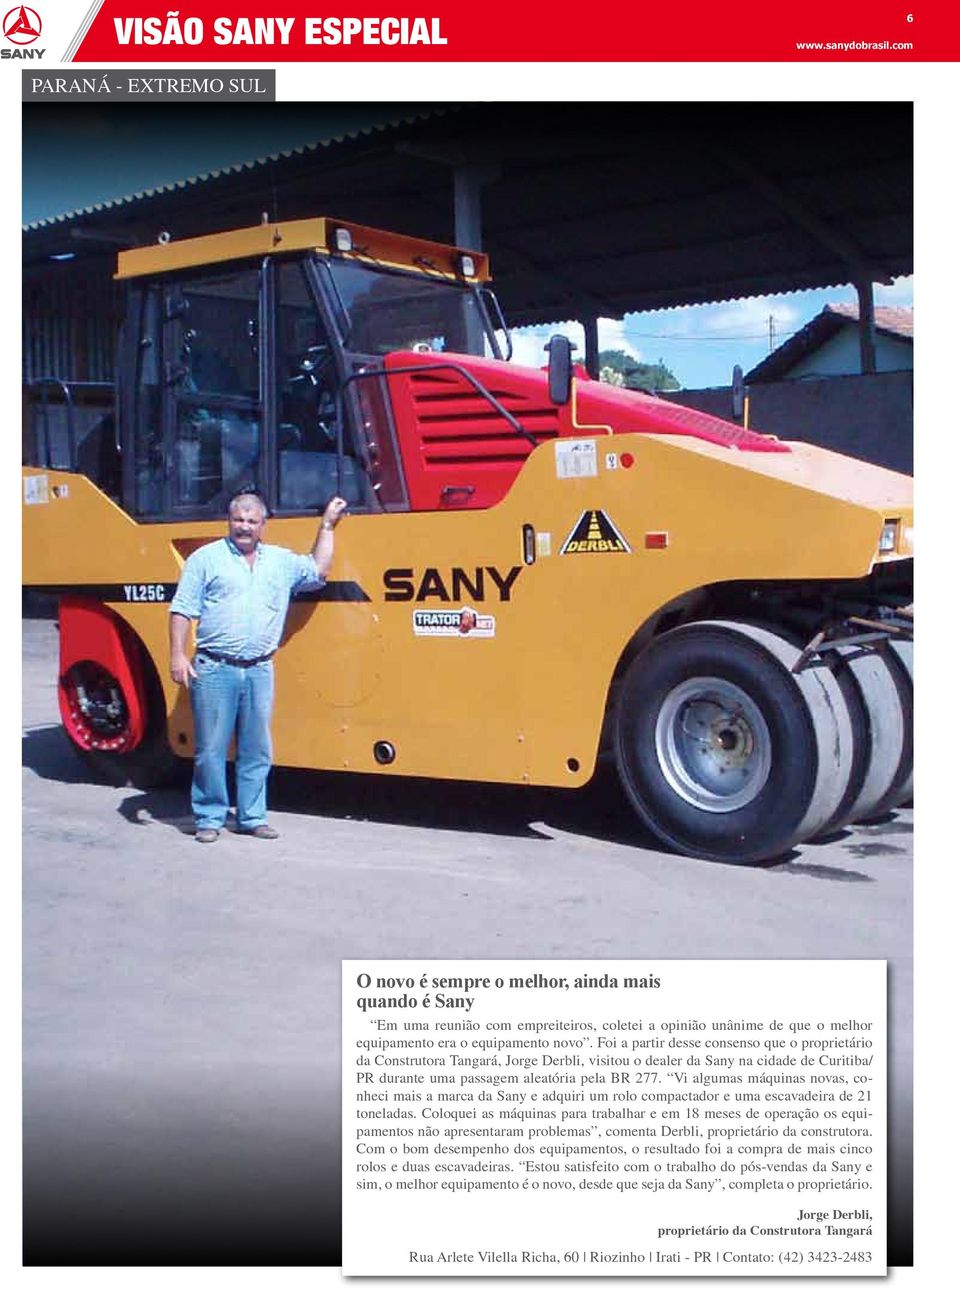 Foi a partir desse consenso que o proprietário da Construtora Tangará, Jorge Derbli, visitou o dealer da Sany na cidade de Curitiba/ PR durante uma passagem aleatória pela BR 277.